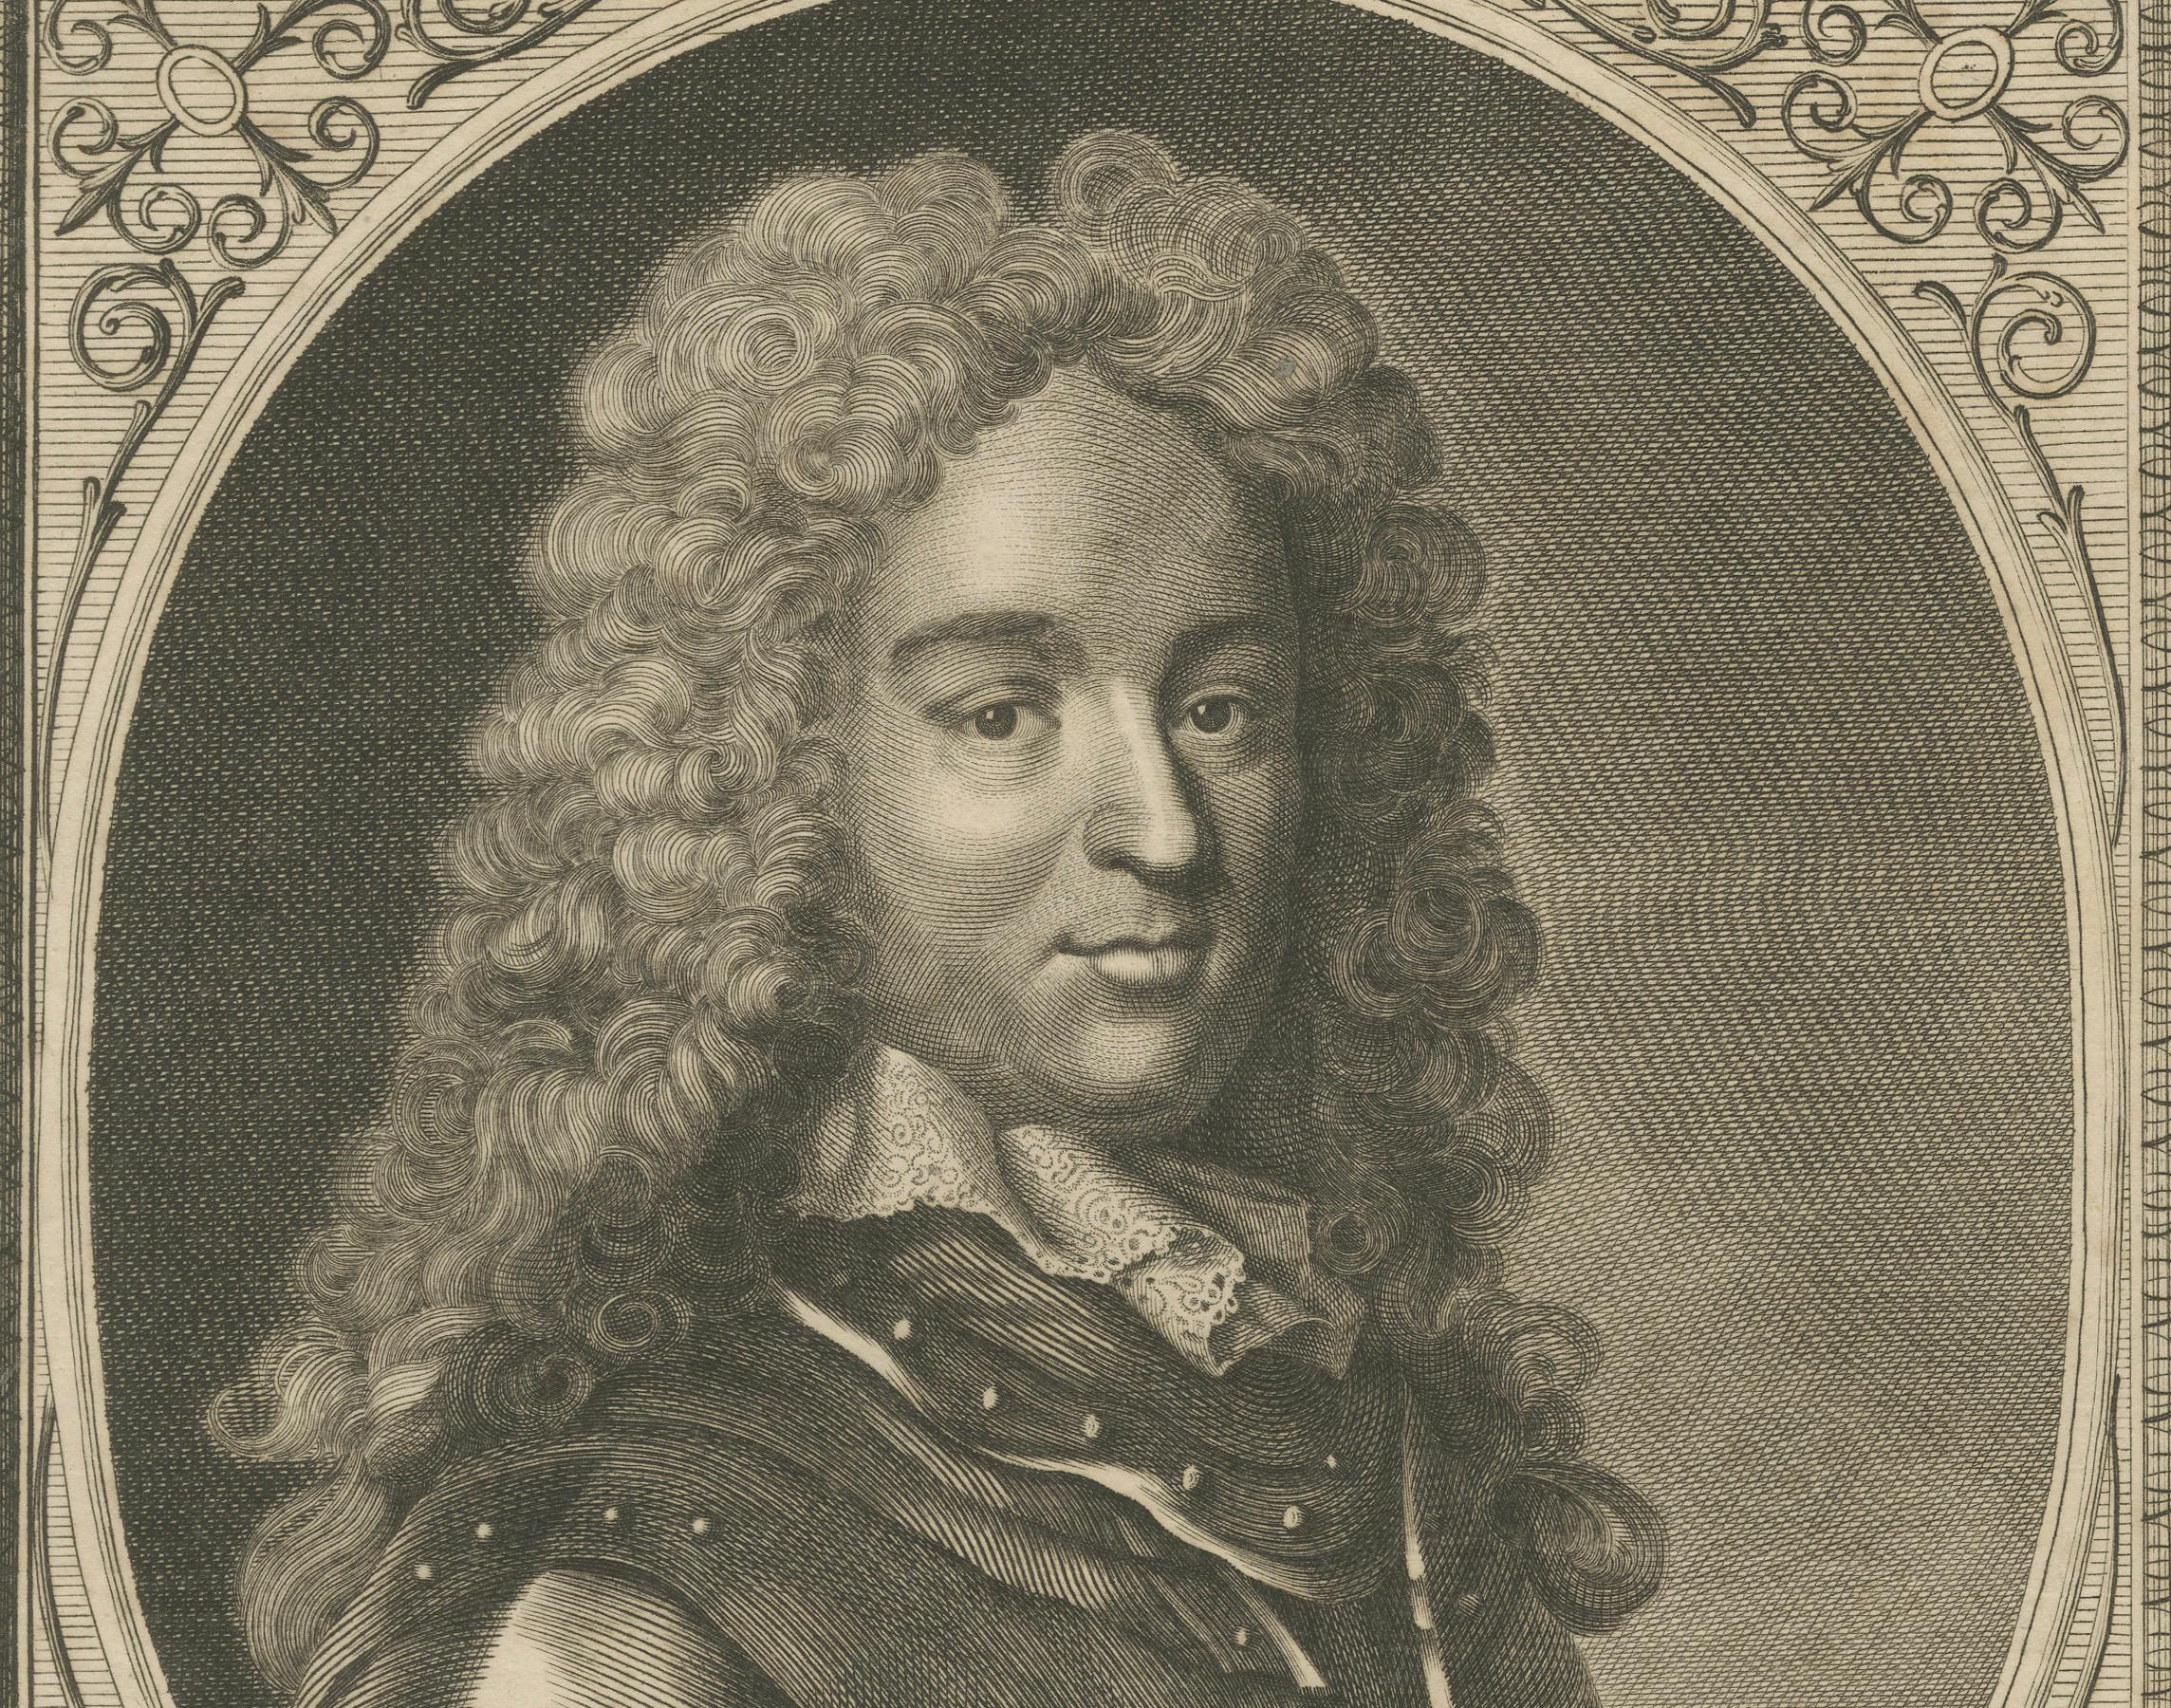 Paper Authentic 1784 Engraved Portrait of Historian Rapin de Thoyras For Sale